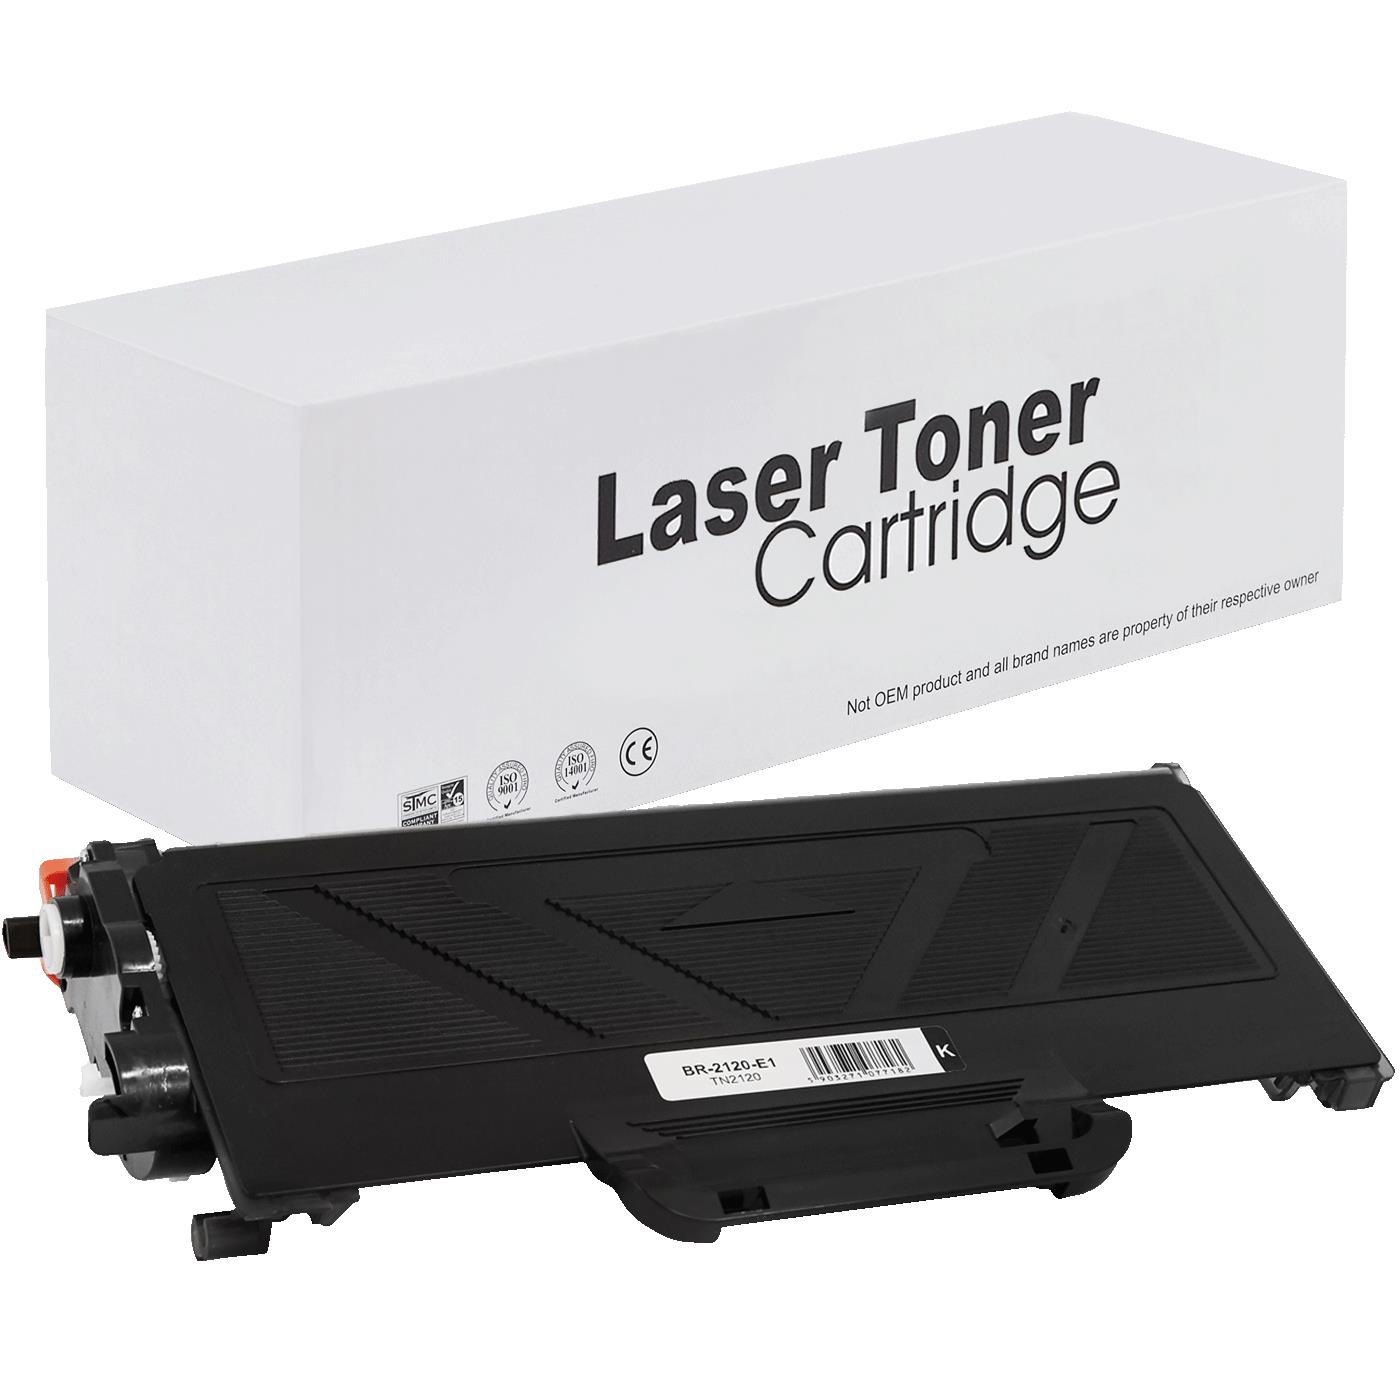 съвместима тонер касета за принтери и печатащи устройства на Brother MFC-7840W Toner BR-2120 | TN2120. Ниски цени, прецизно изпълнение, високо качество.